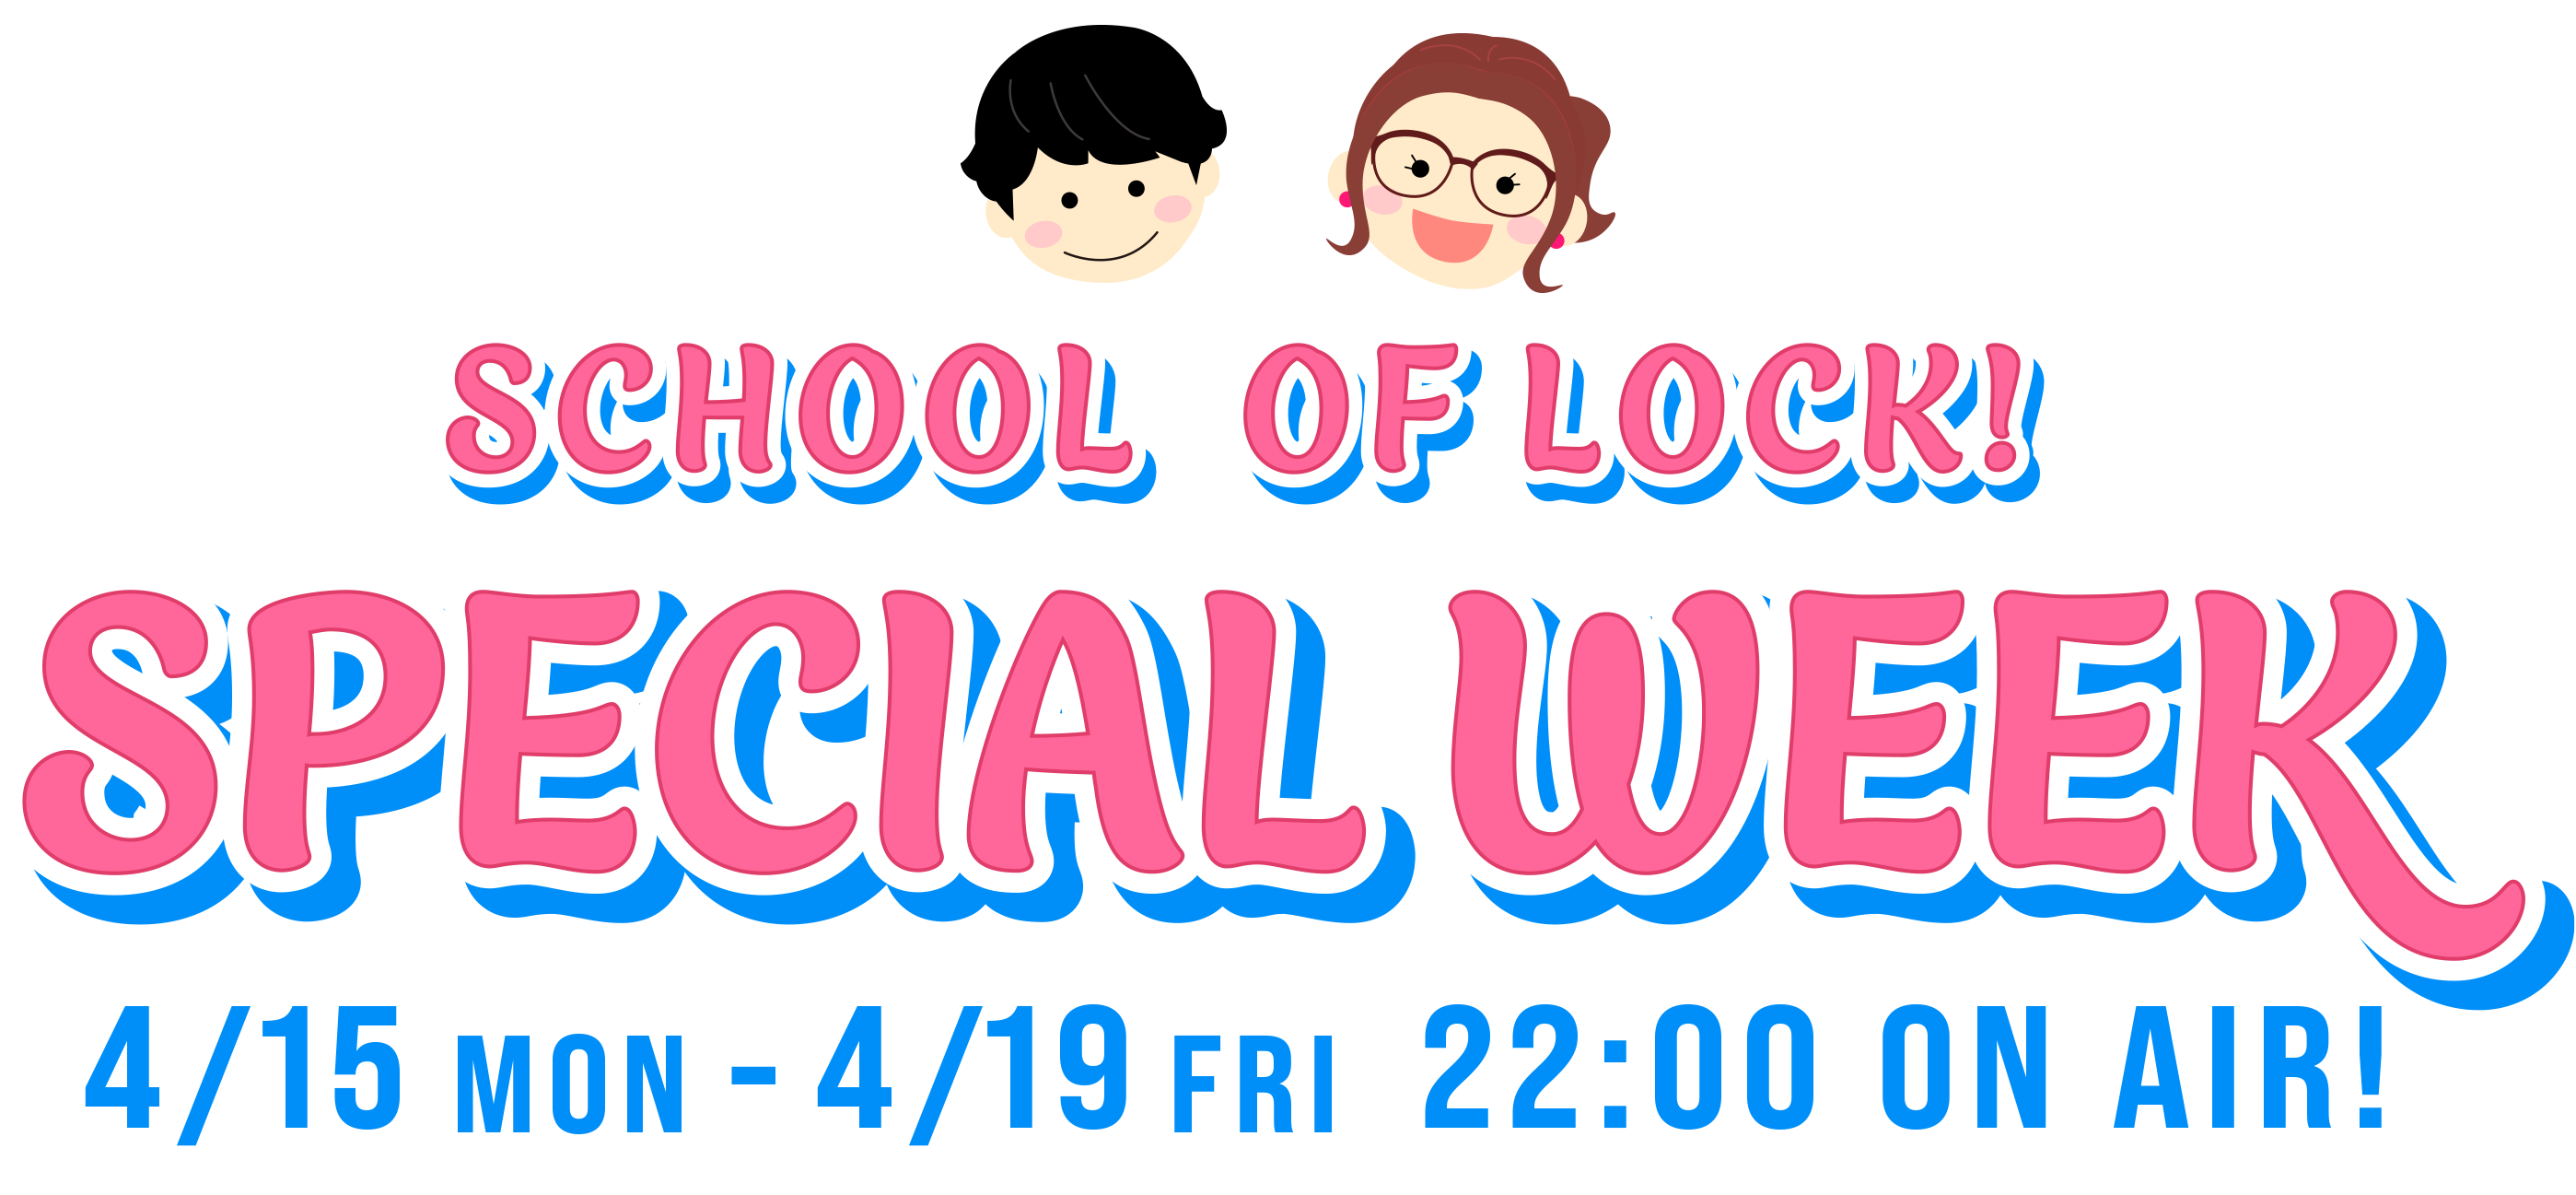 SCHOOL OF LOCK! SPECIAL WEEK 4.15 MON-4.19 FRI 22:00- ON AIR!